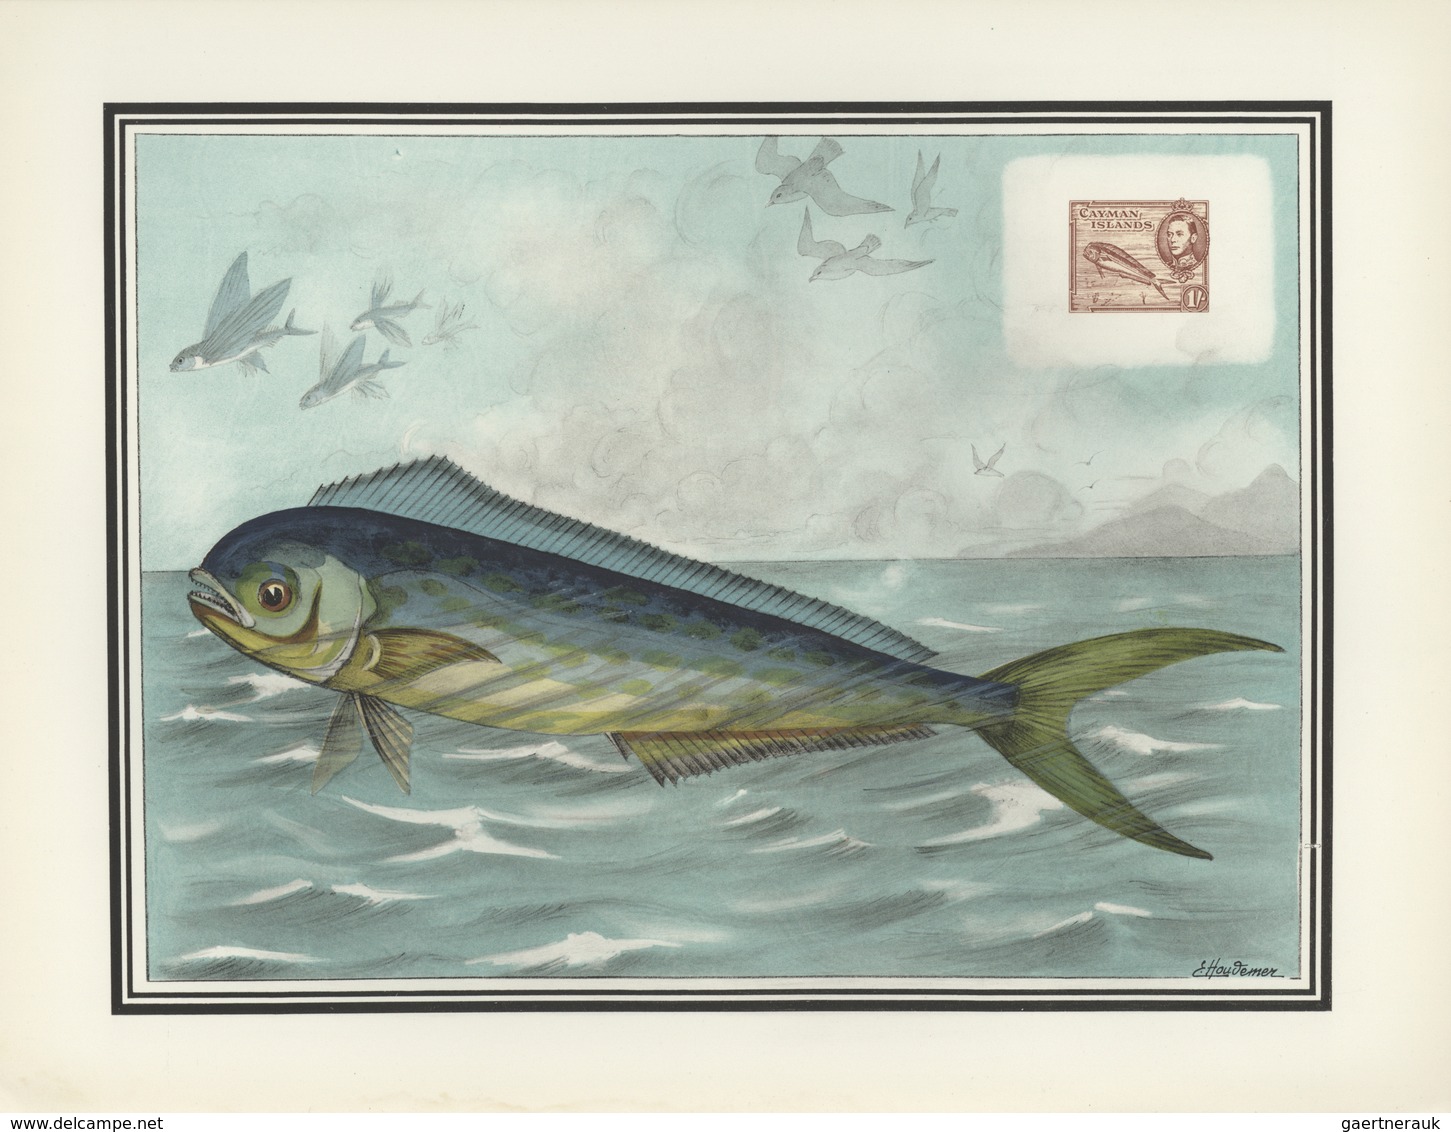 Thematik: Tiere-Fische / animals-fishes: 1955, France. "LES OISEAUX et le Timbre-Poste par F.-E. Hou